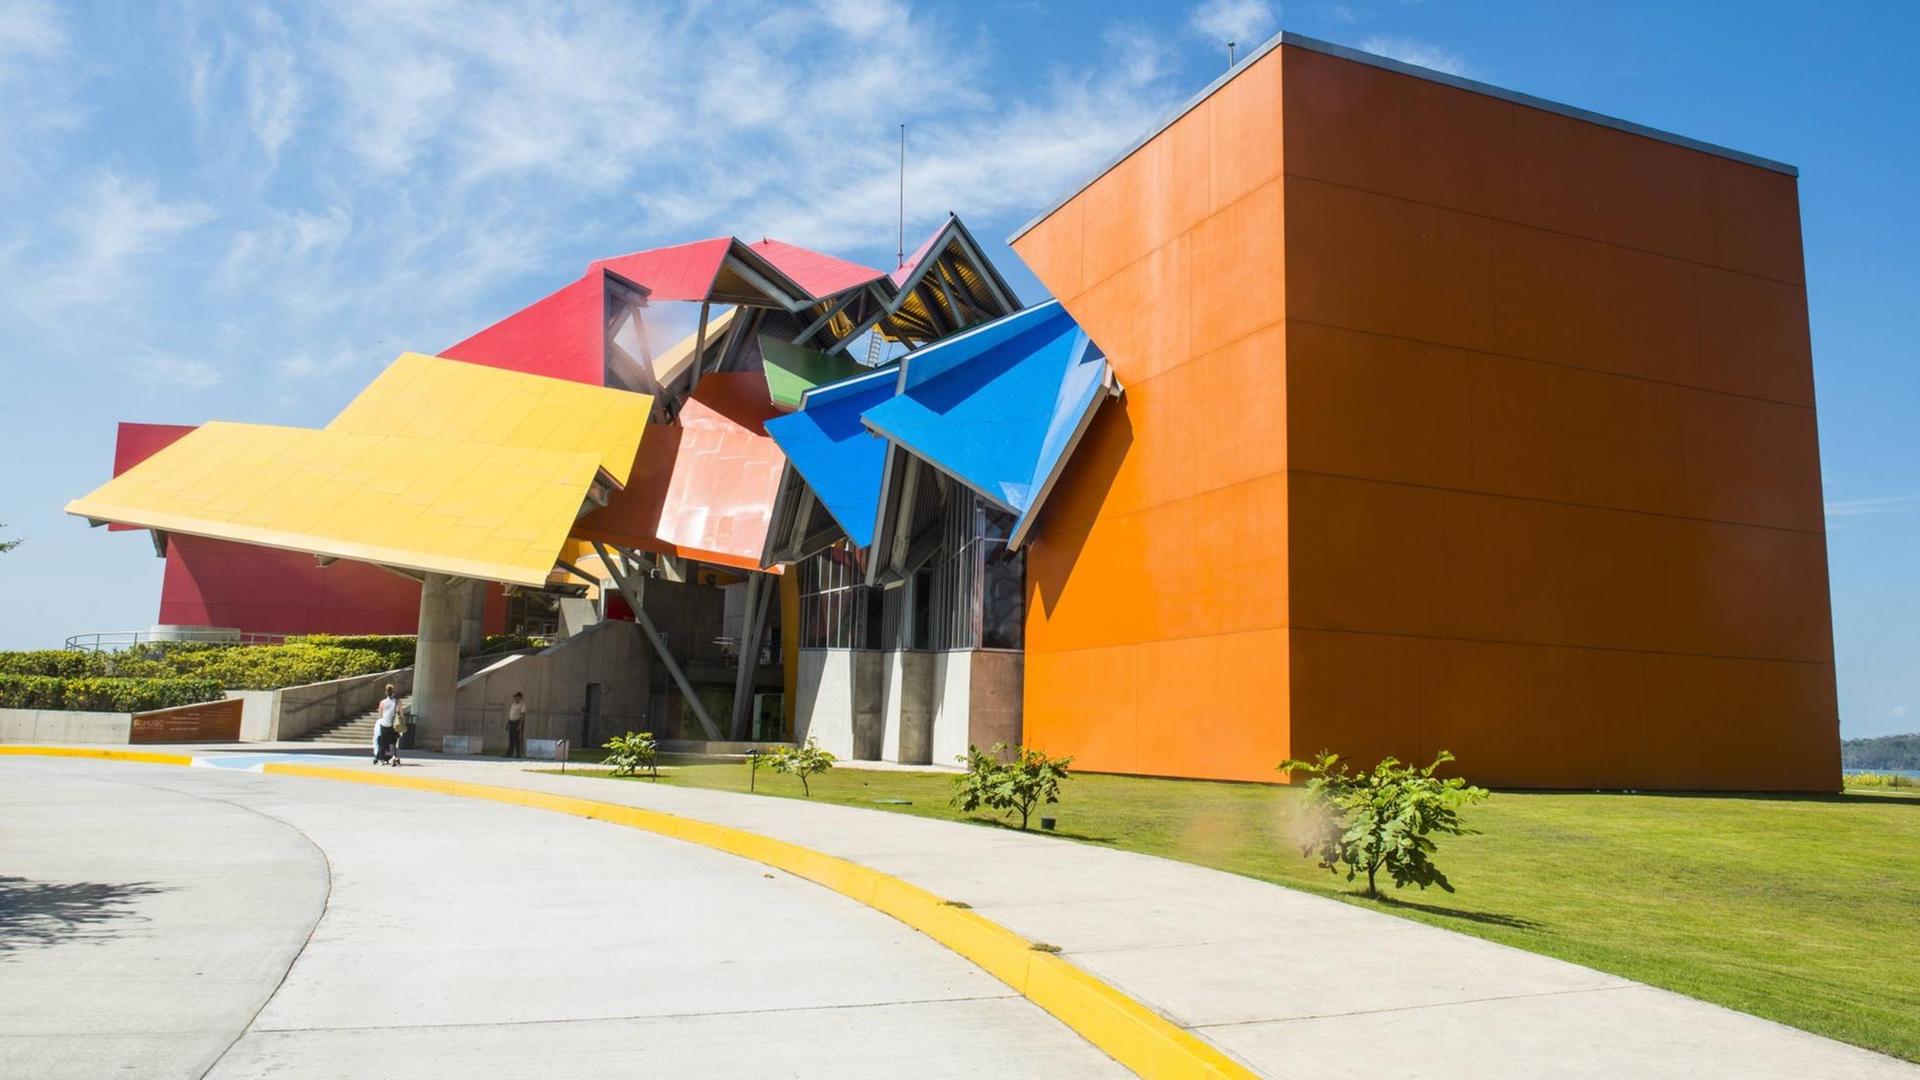 Das Biomuseo von Frank O. Gehry in Panama-Stadt. Ein buntes und architektonisch dekonstruktivistisches Gebäude.